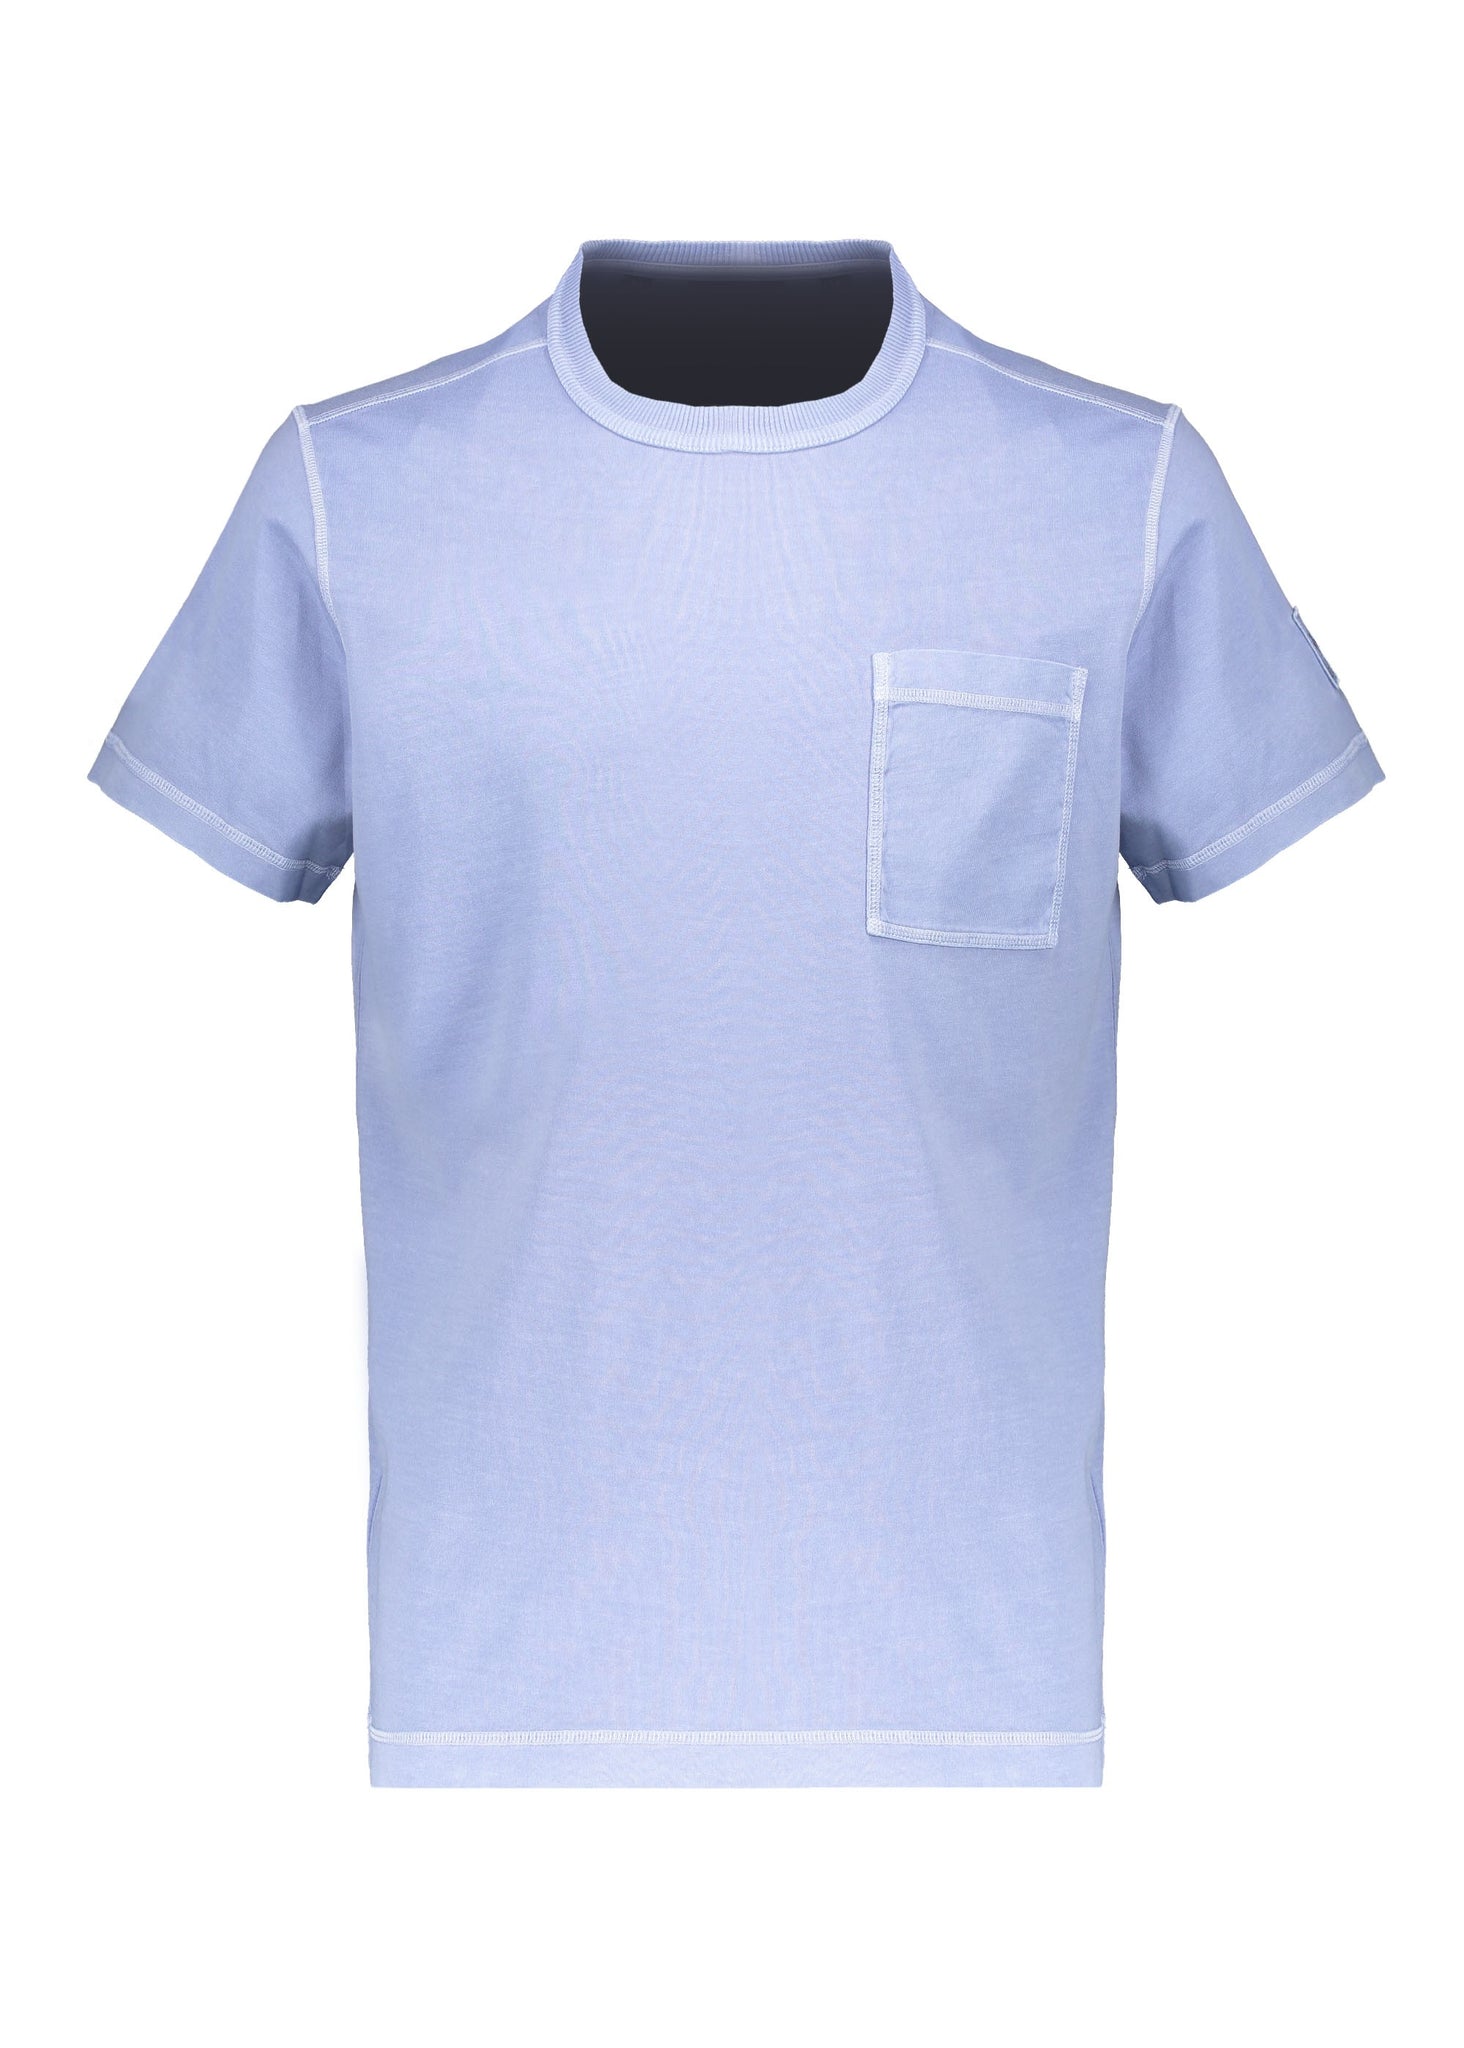 Belstaff Gangway T Shirt - Mauve